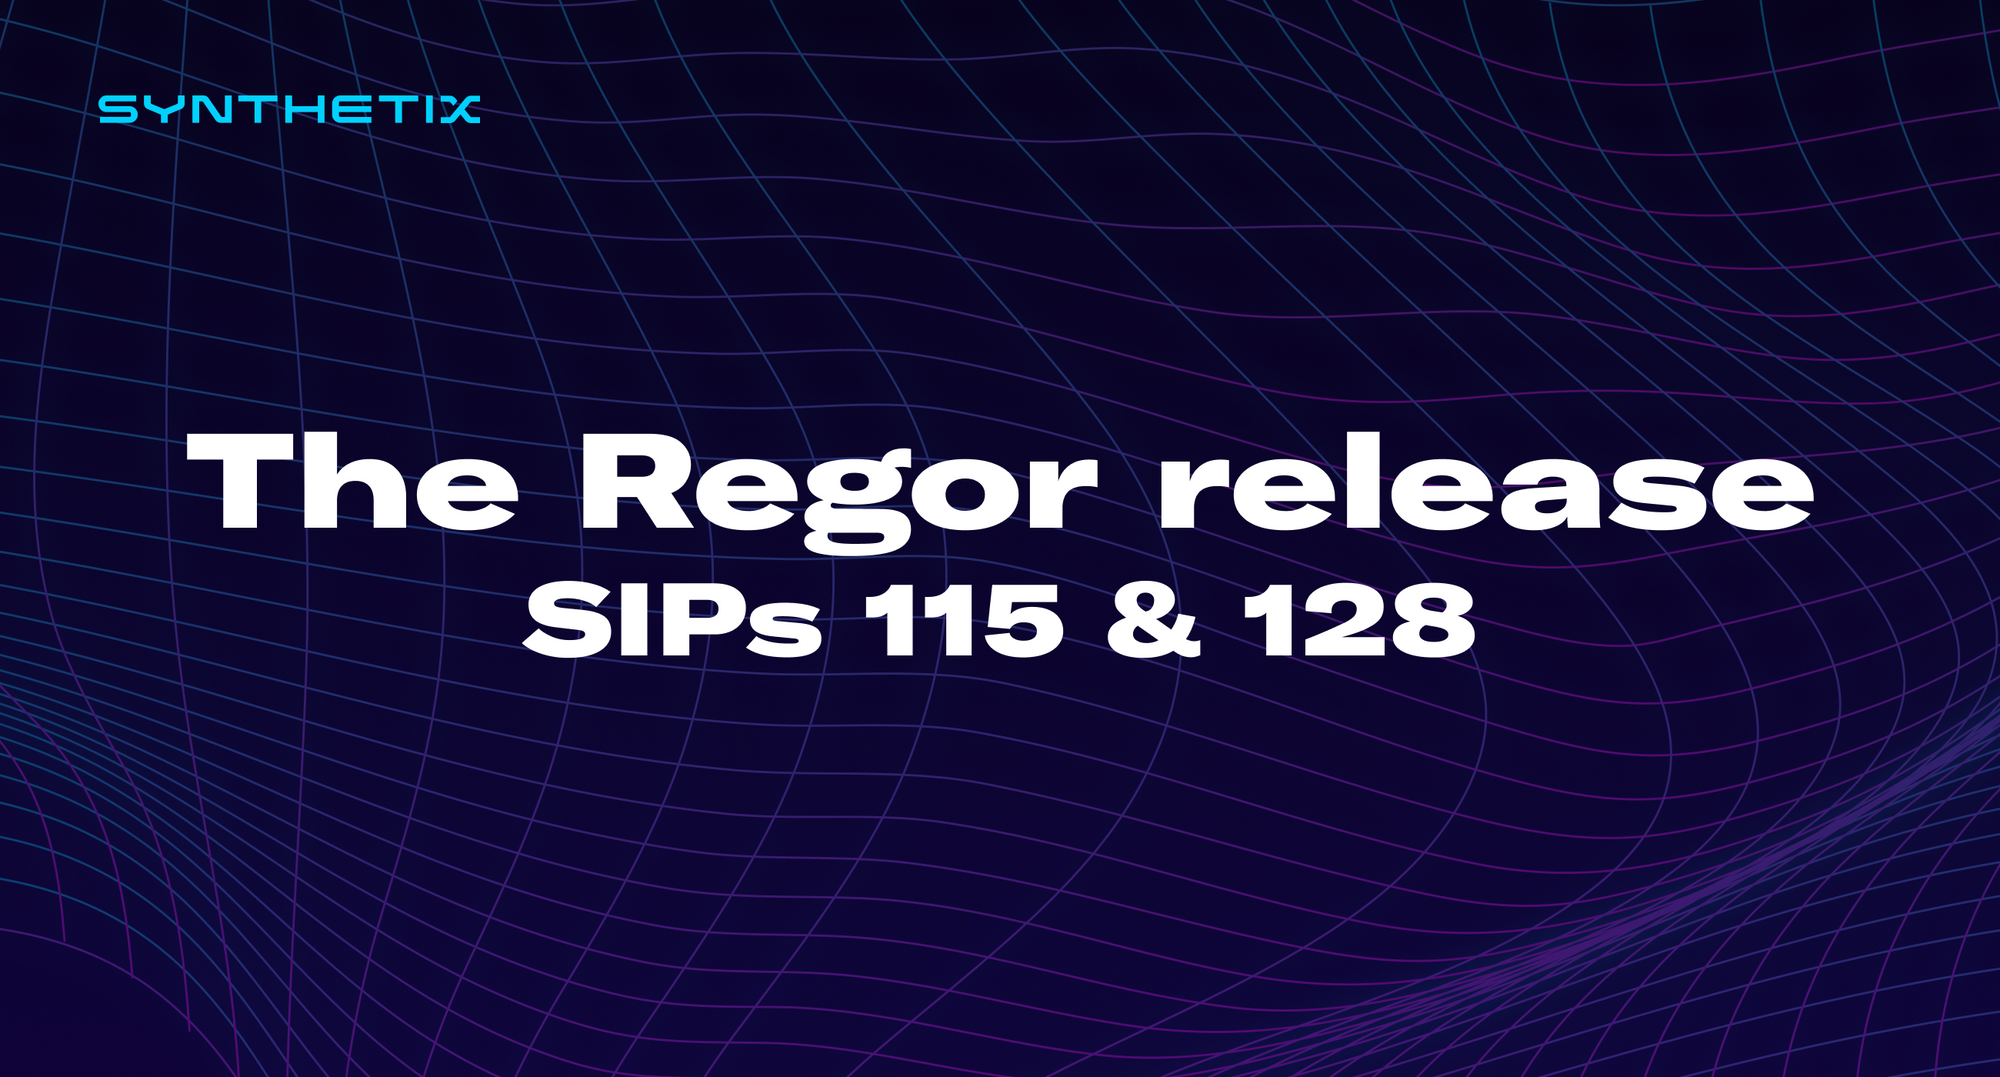 The Regor release